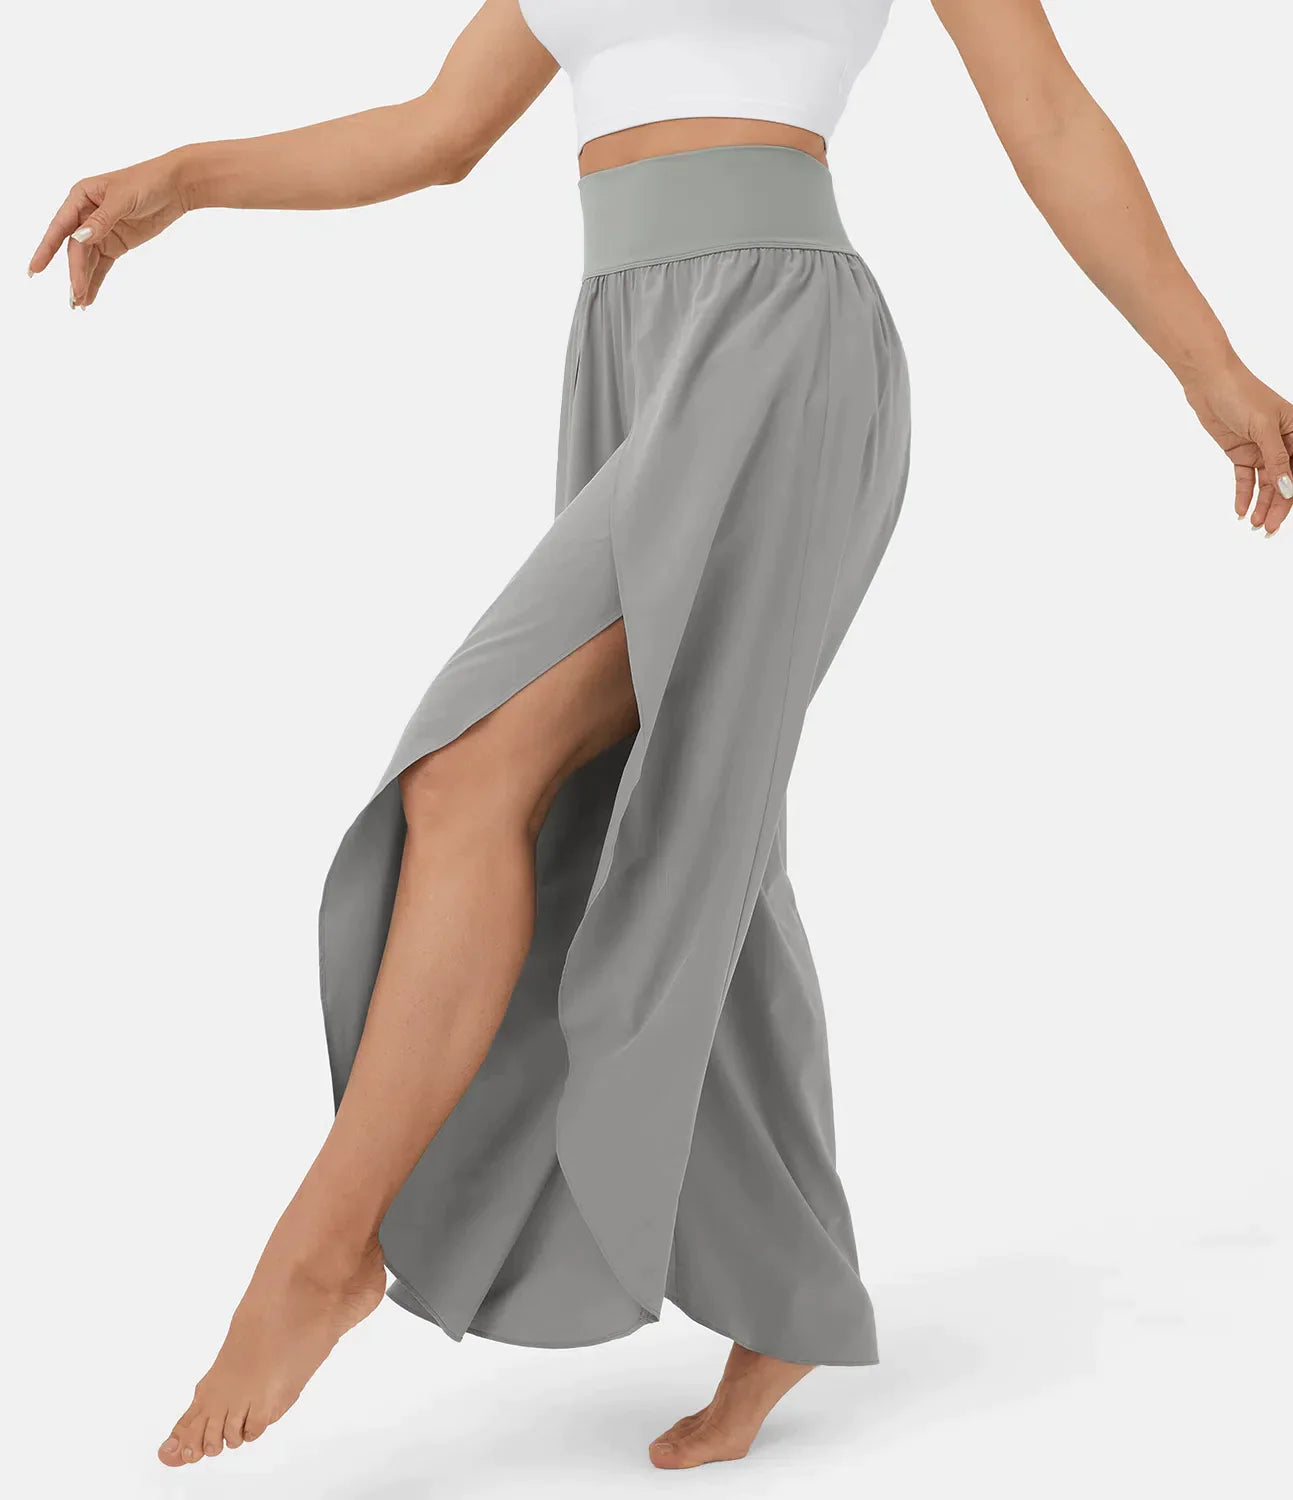 Airflow damebukser - super behagelige, luftige og elegante bukser med indbyggede shorts